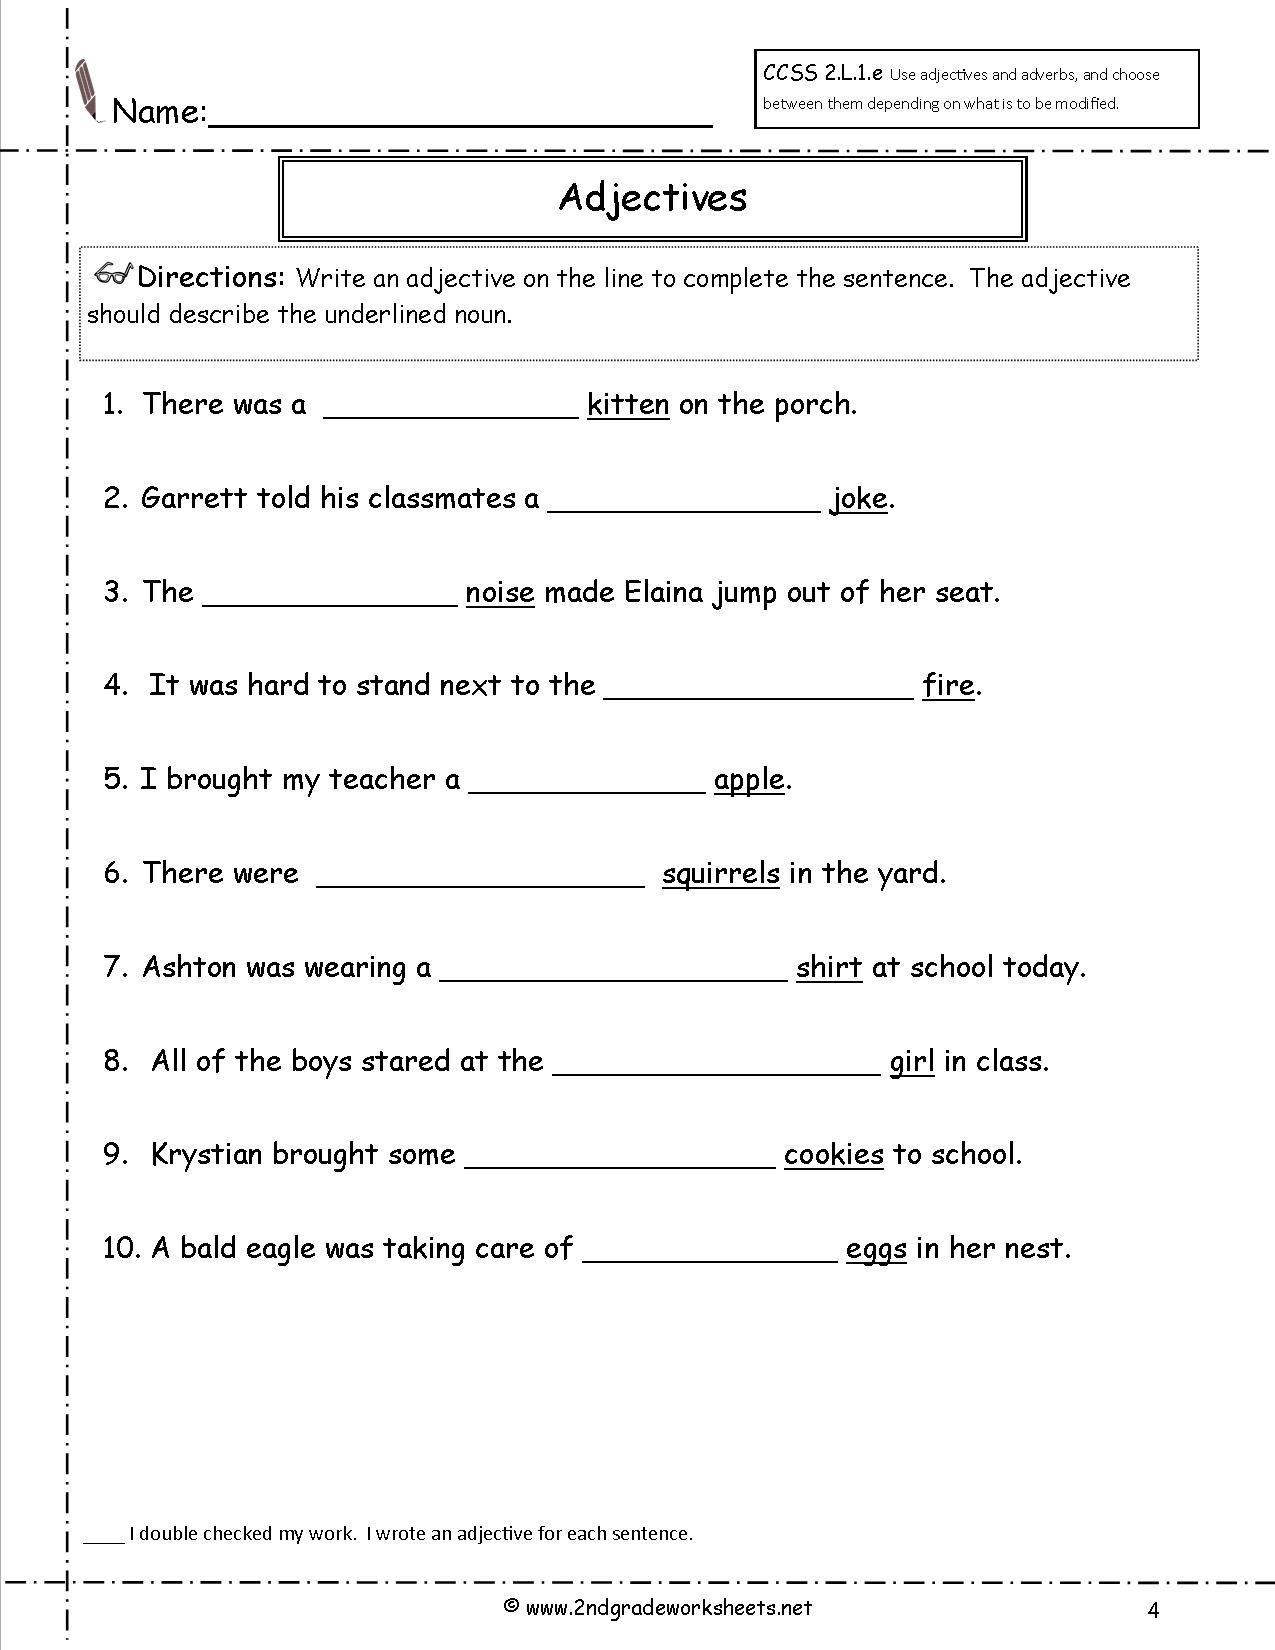 4th Grade Types Of Adjectives Worksheets For Grade 4 Thekidsworksheet